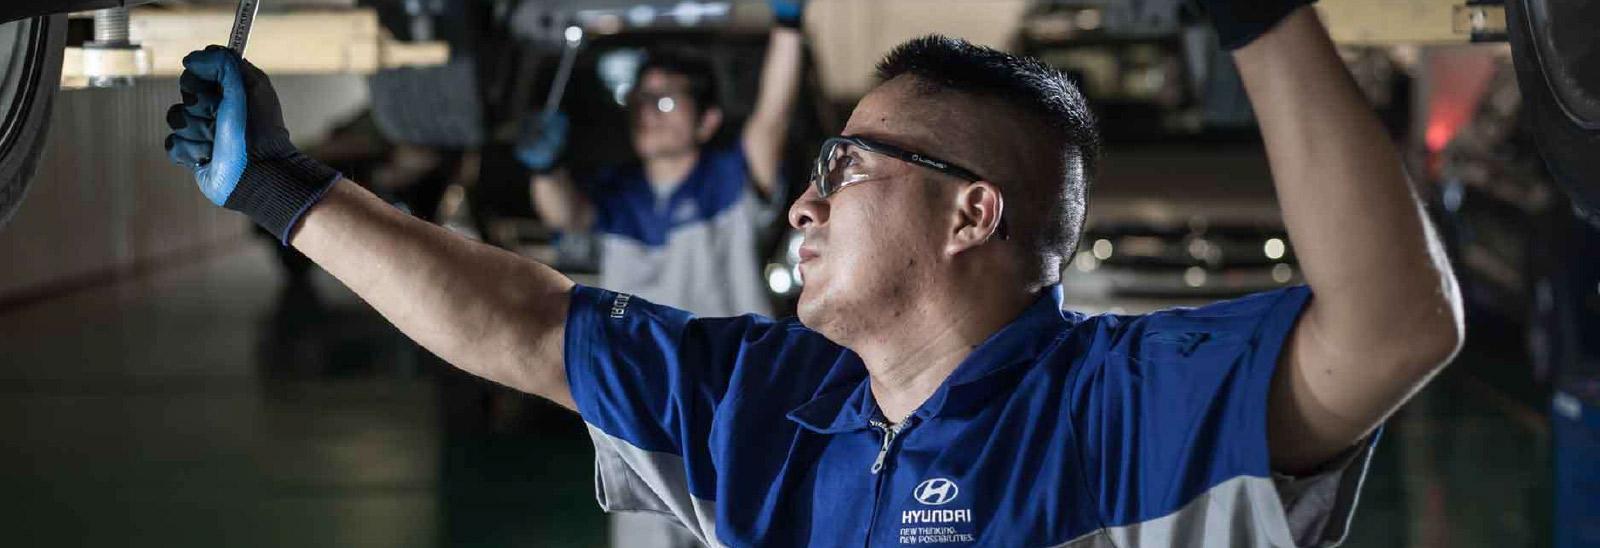 Mecánico en taller Hyundai llevando a cabo revisión a un auto